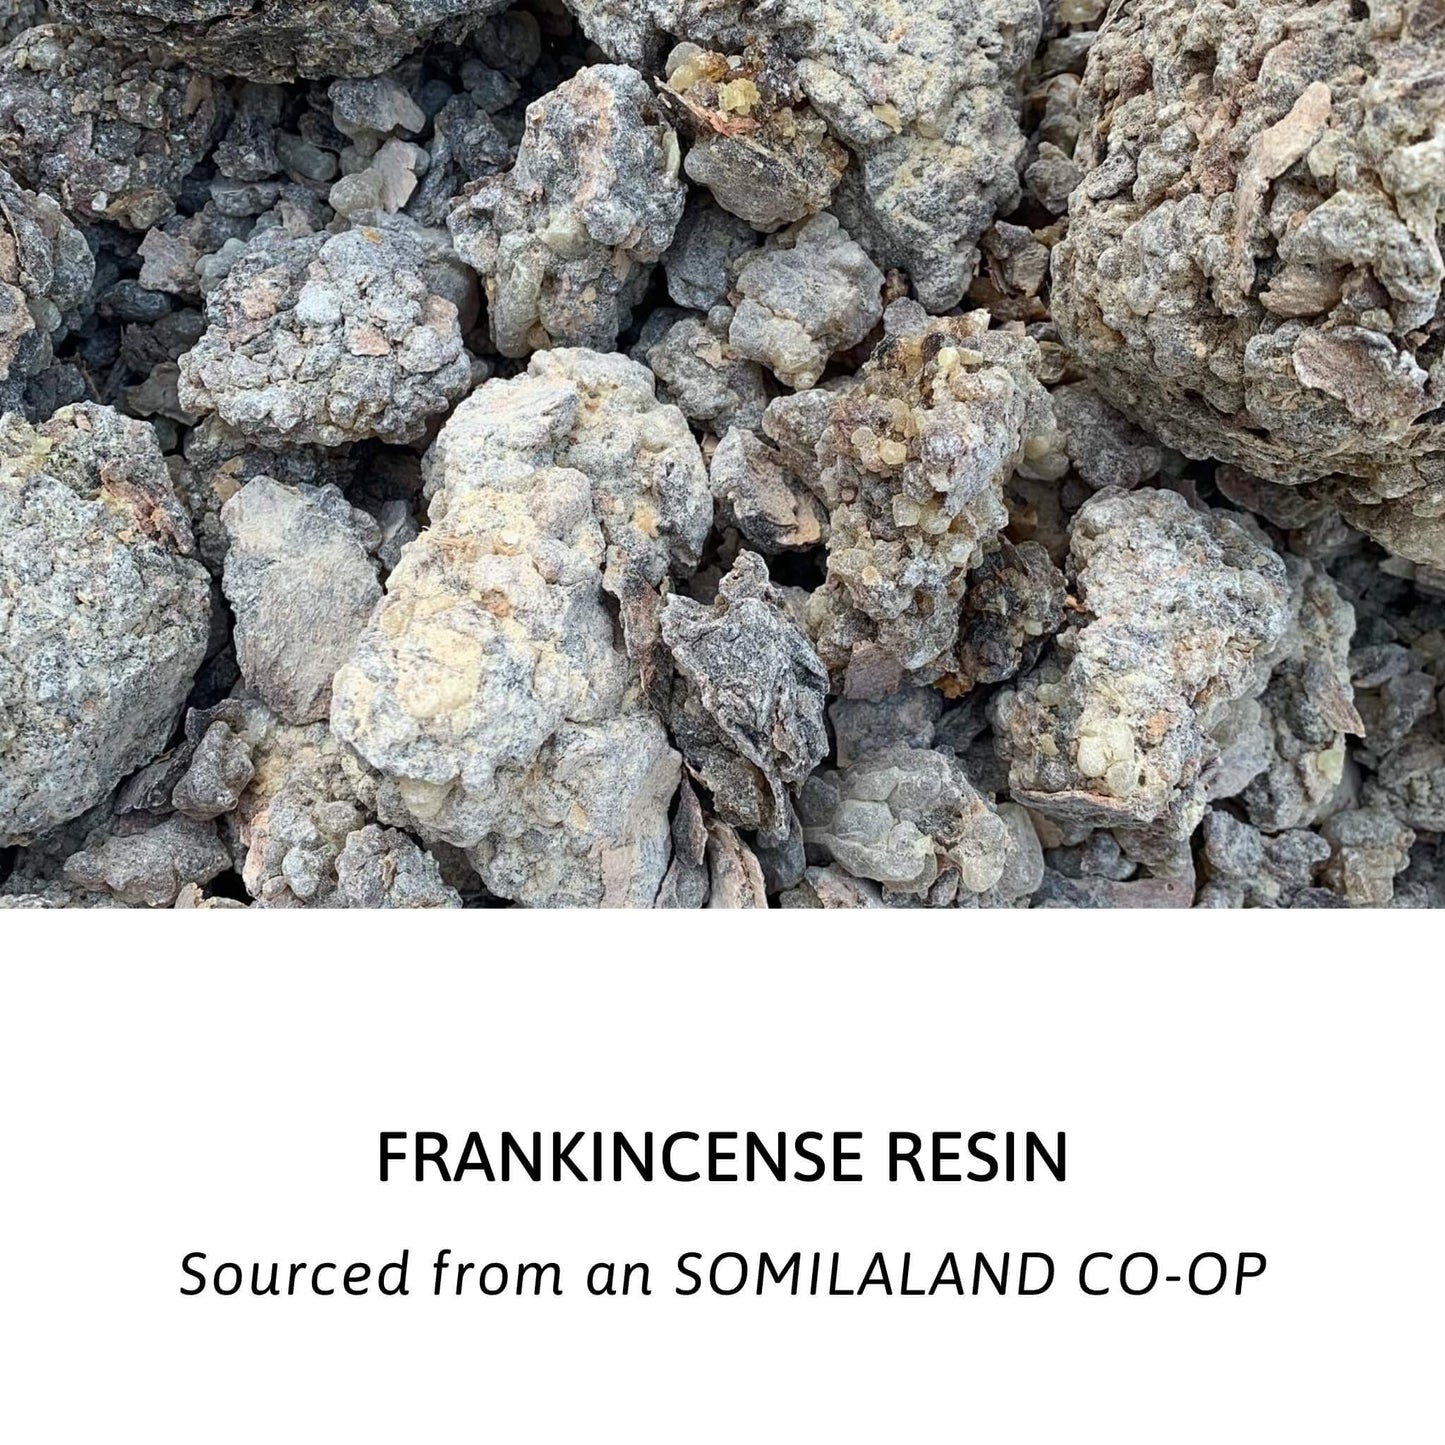 Frankincense Essential Oil kotanical 